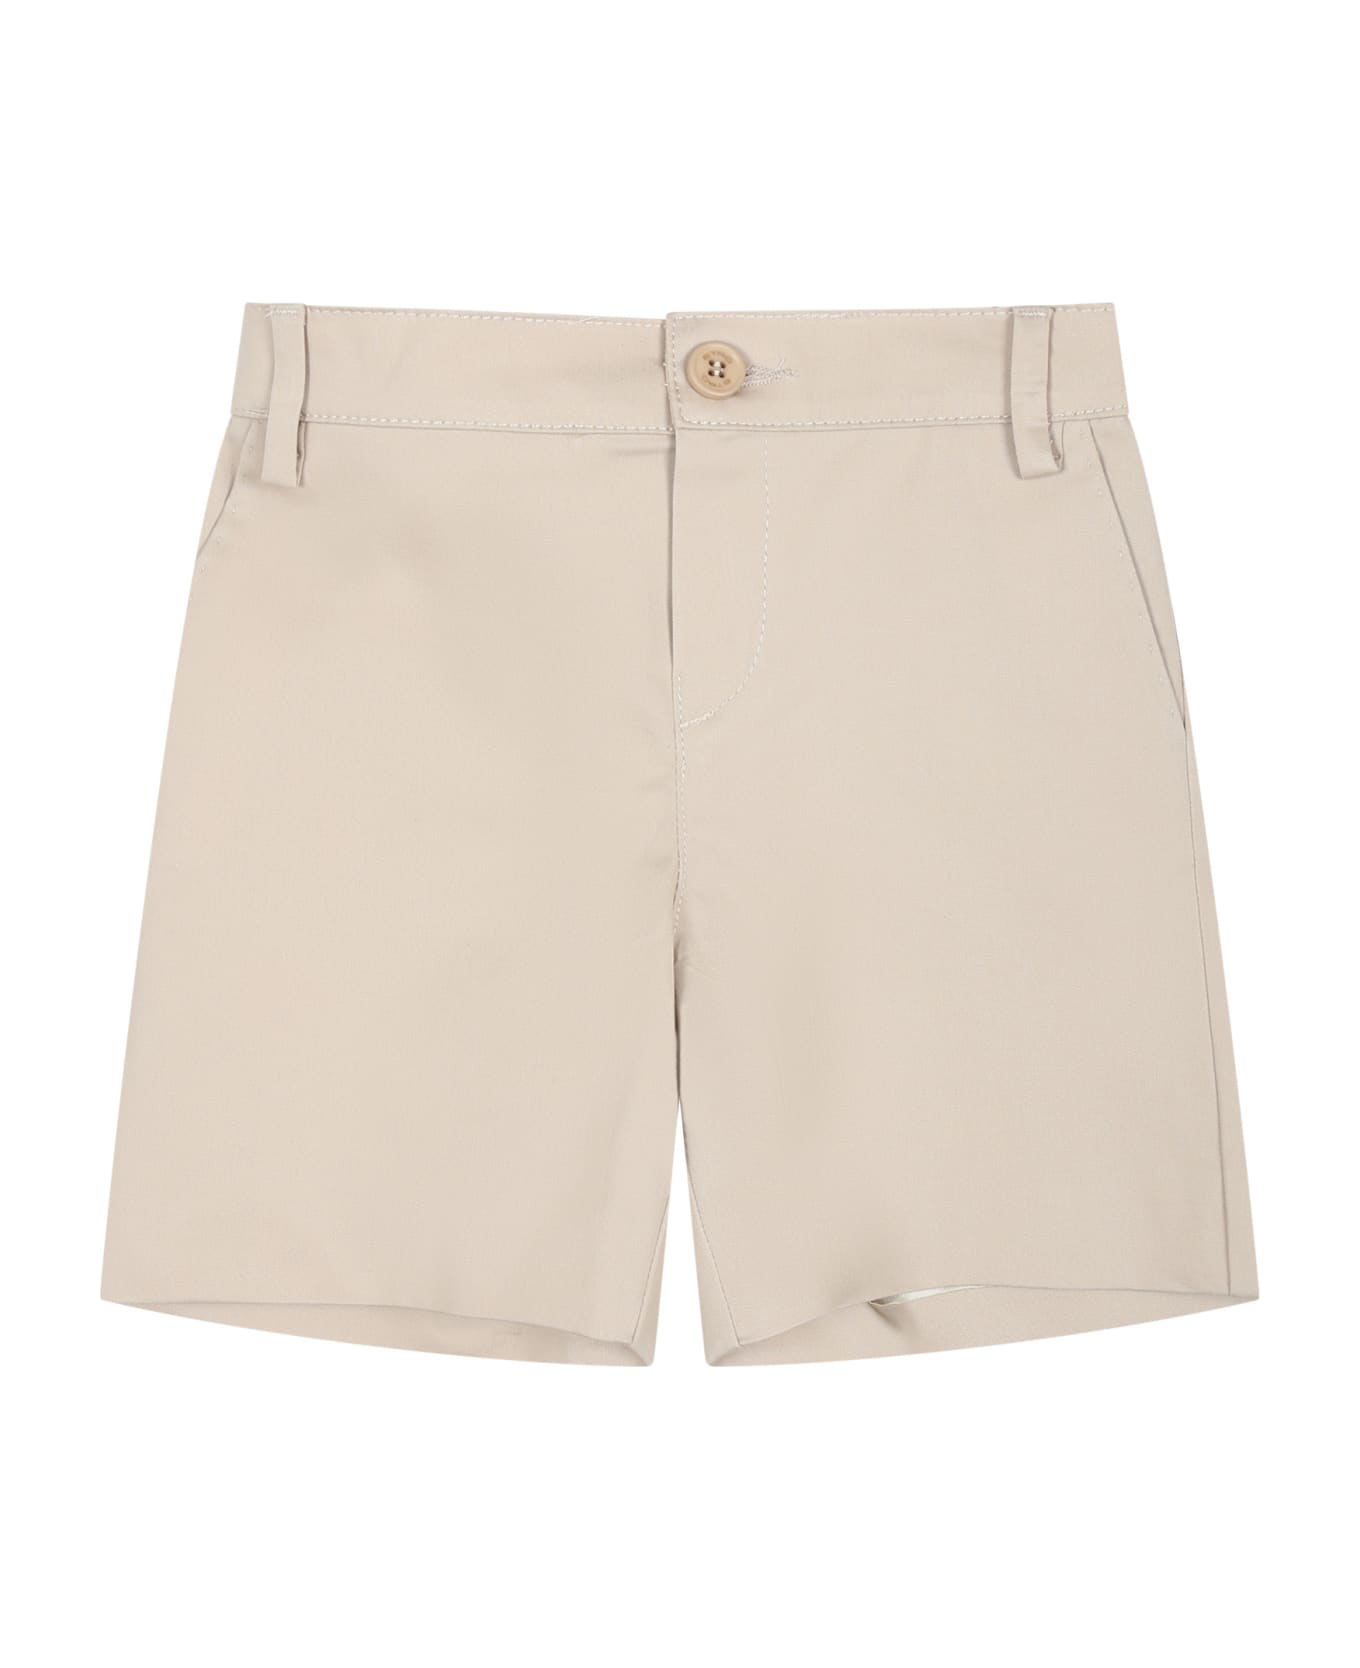 Etro Elegant Beige Shorts For Baby Boy - Beige